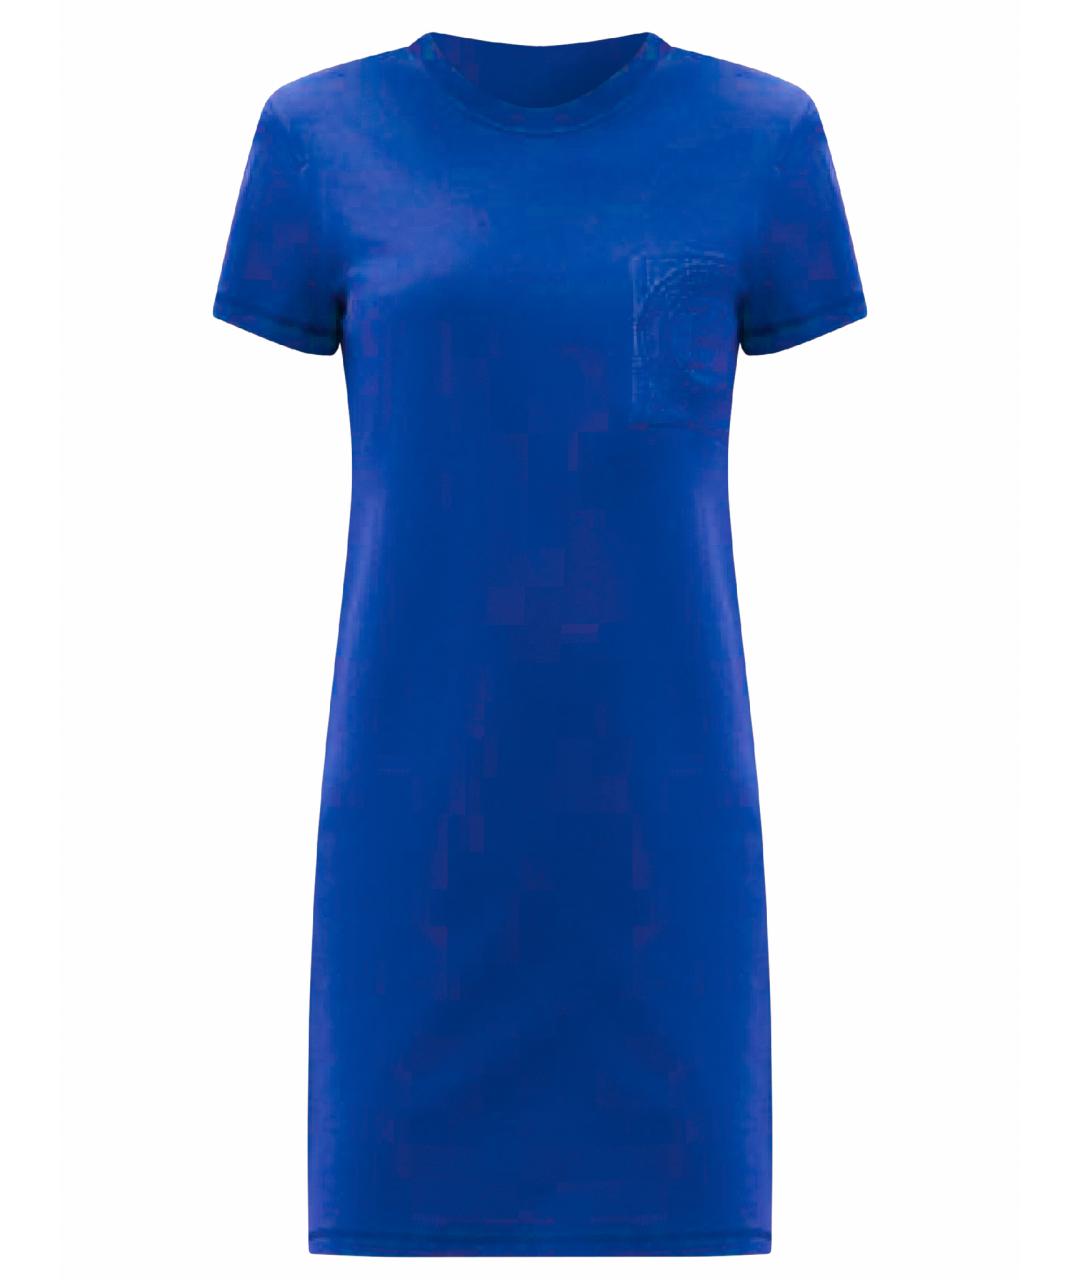 HERMES PRE-OWNED Синее хлопковое повседневное платье, фото 1